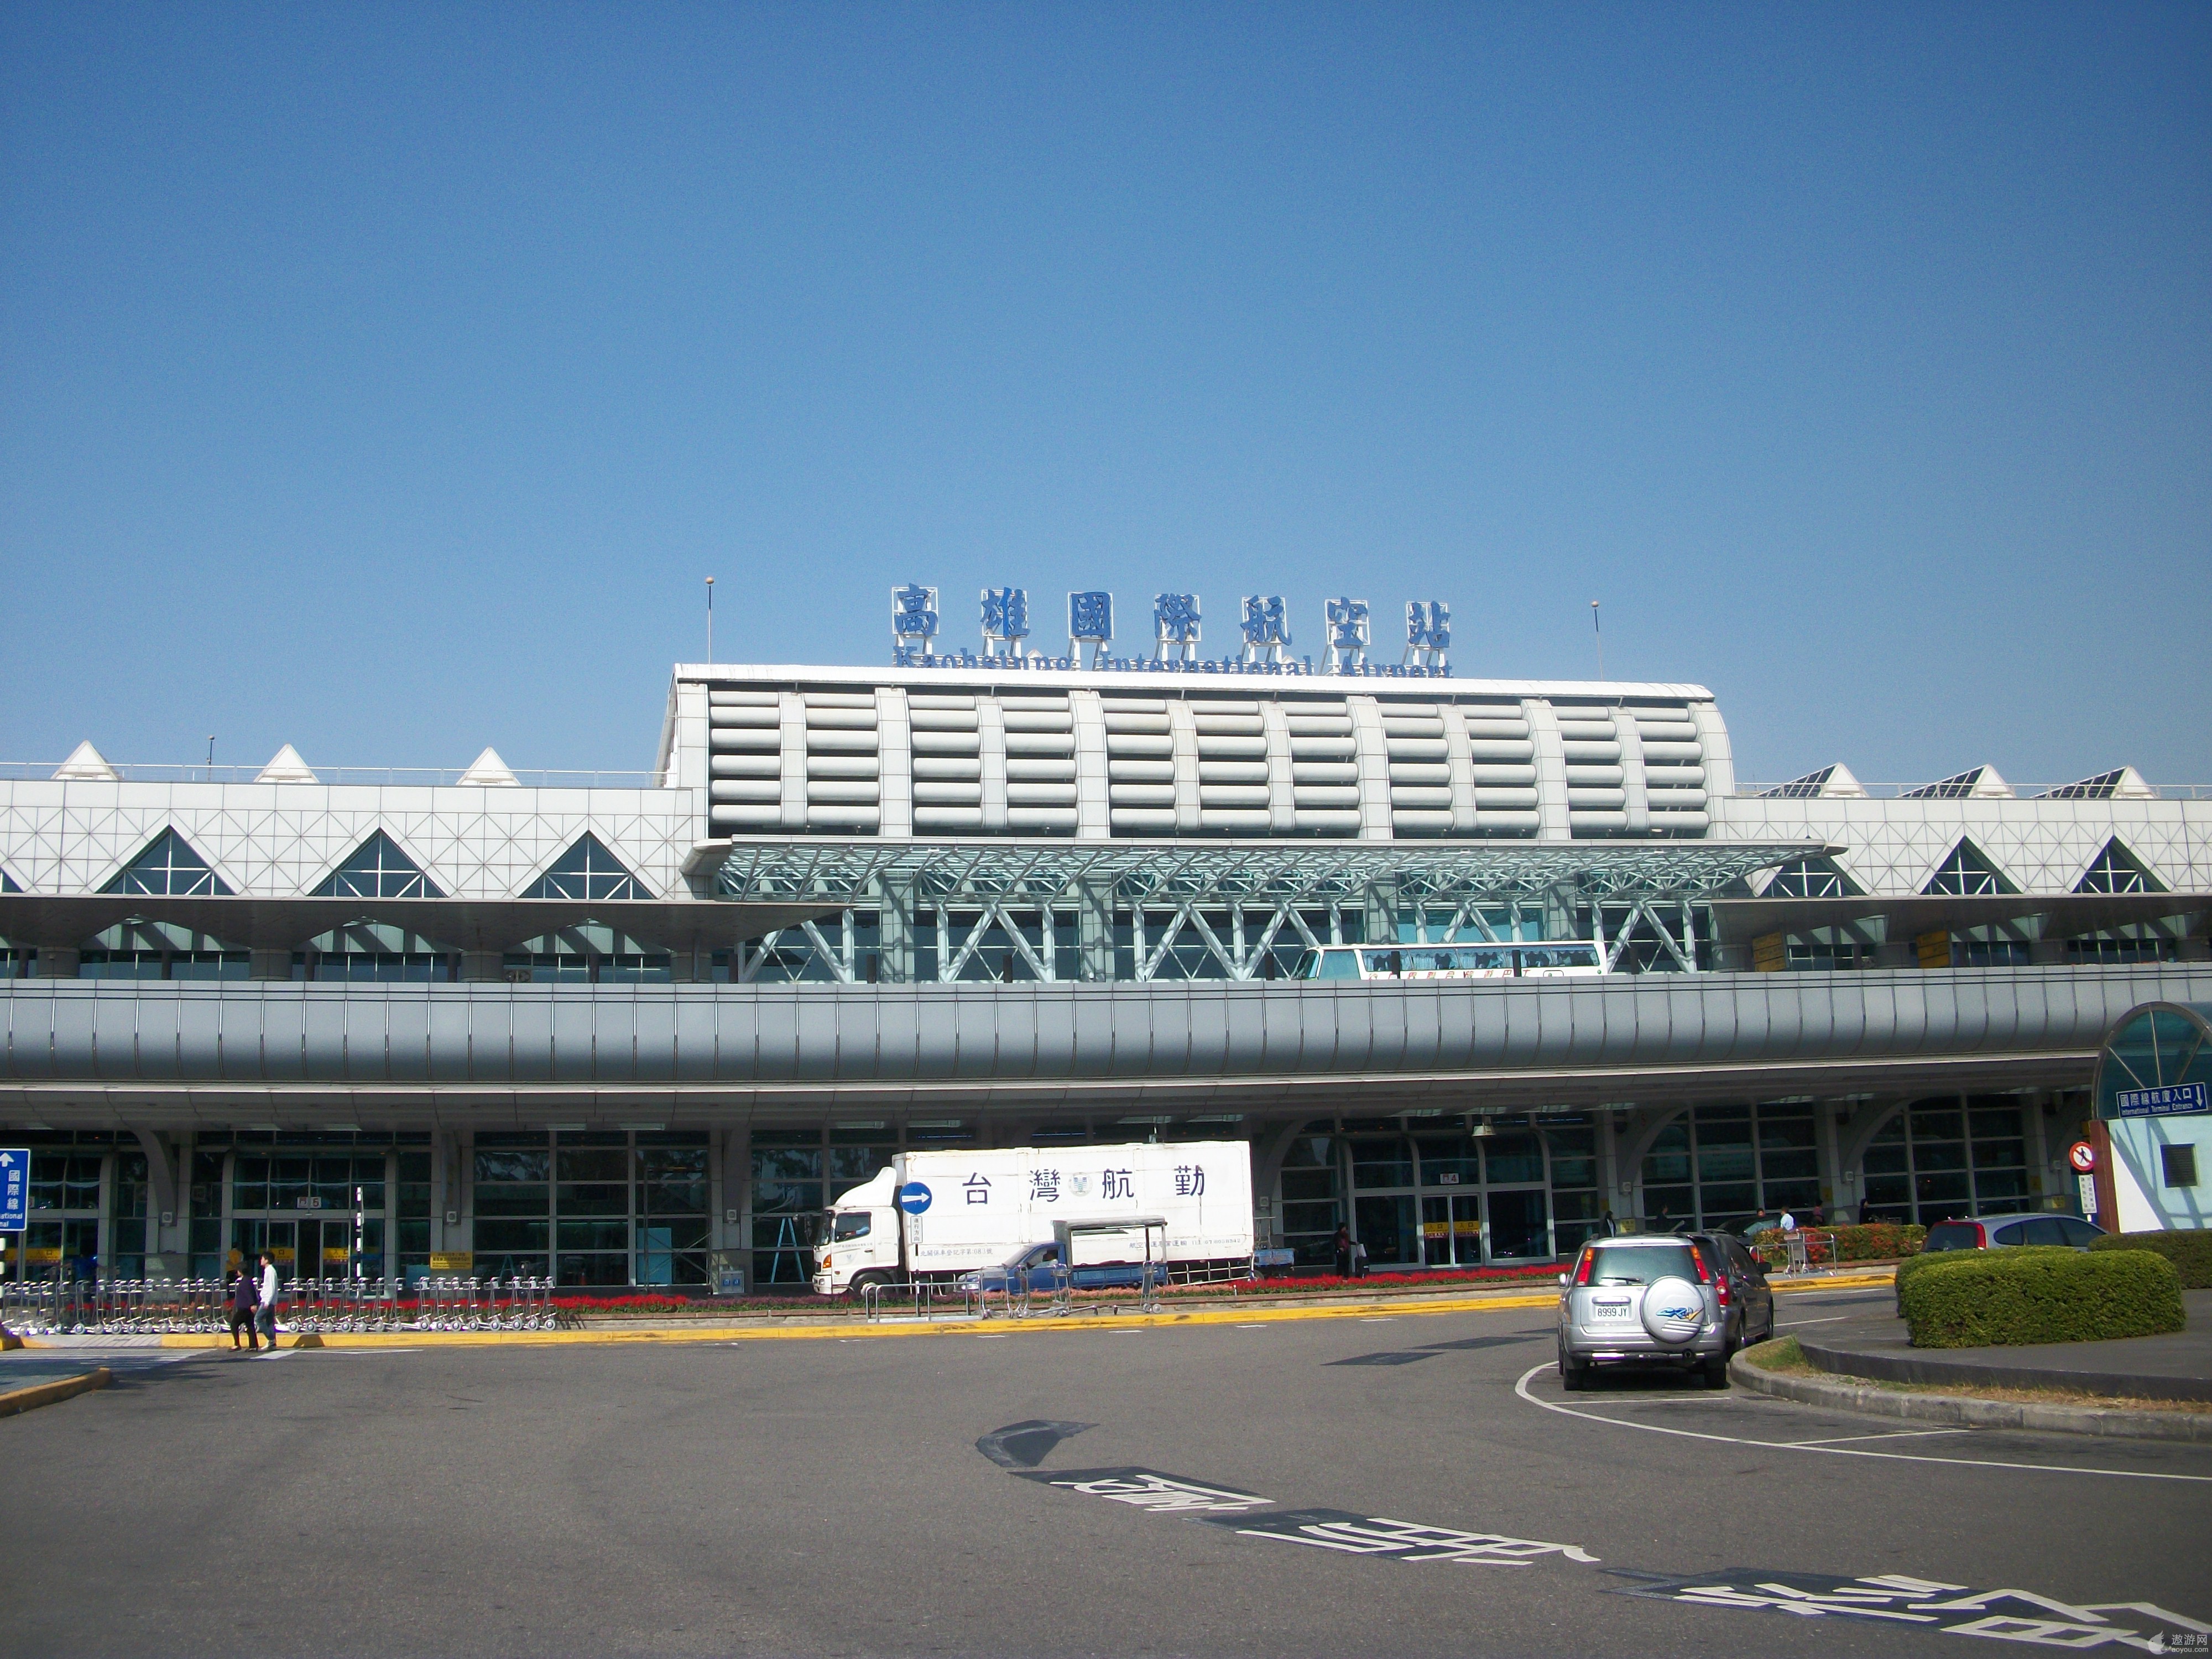 大陆游客前往台湾通常会在台北桃园,松山,高雄这三个机场下飞机,从